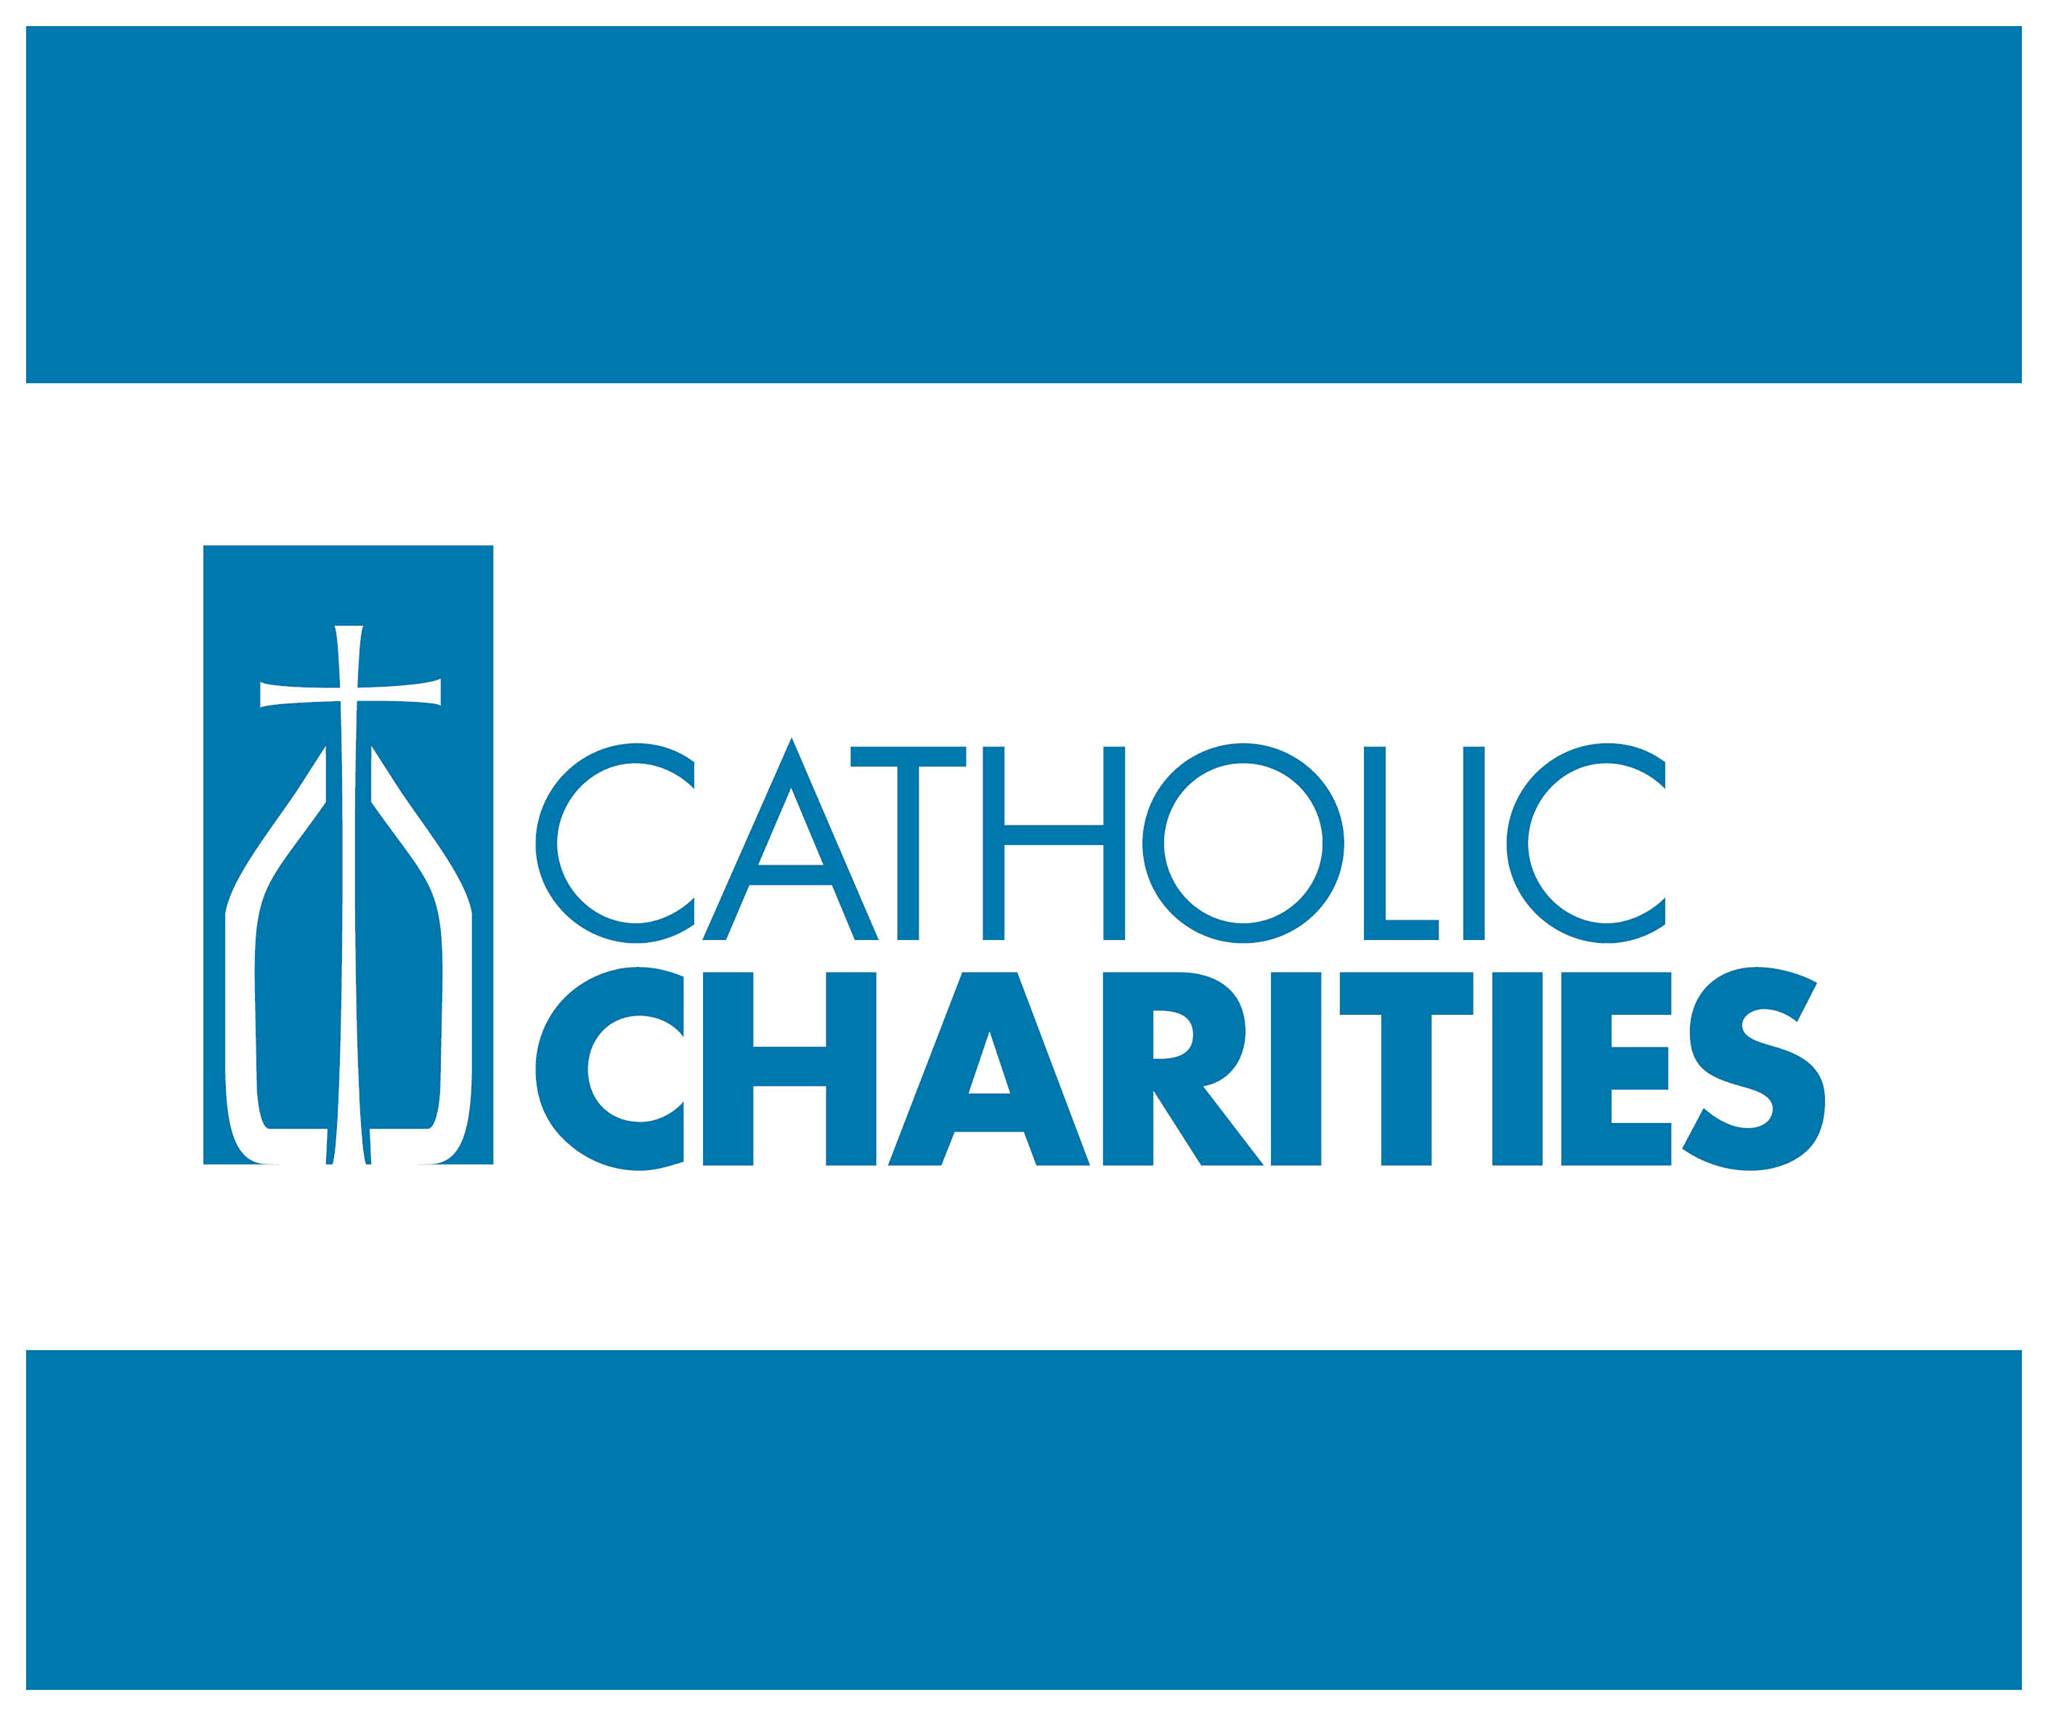 Catholic Charities - Sheehan Center